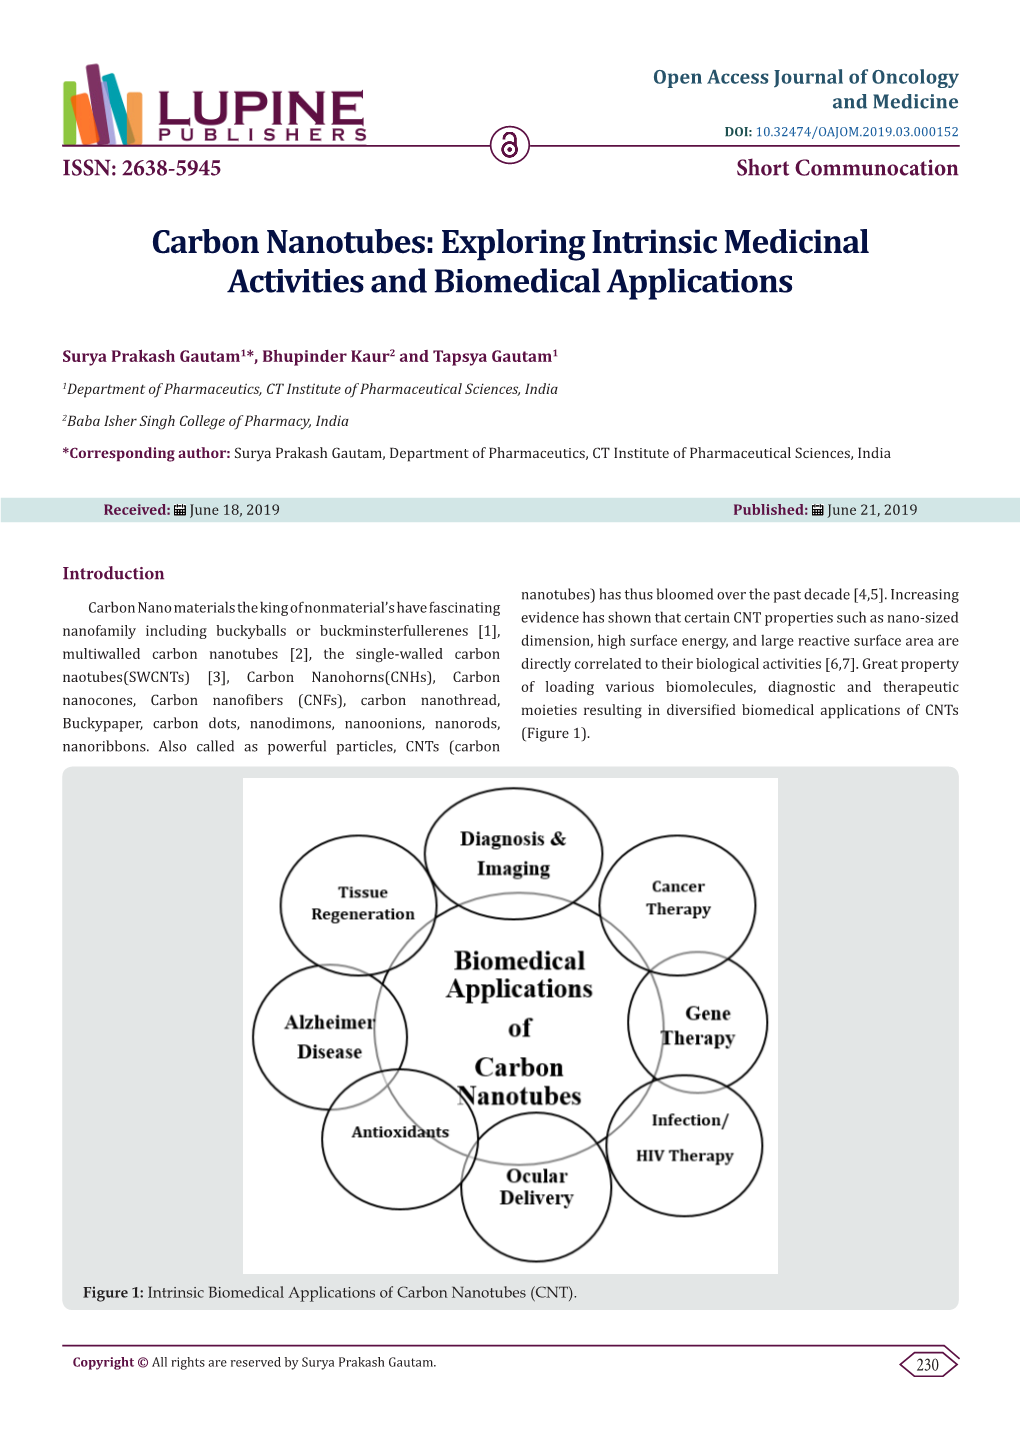 Carbon Nanotubes: Exploring Intrinsic Medicinal Activities and Biomedical Applications